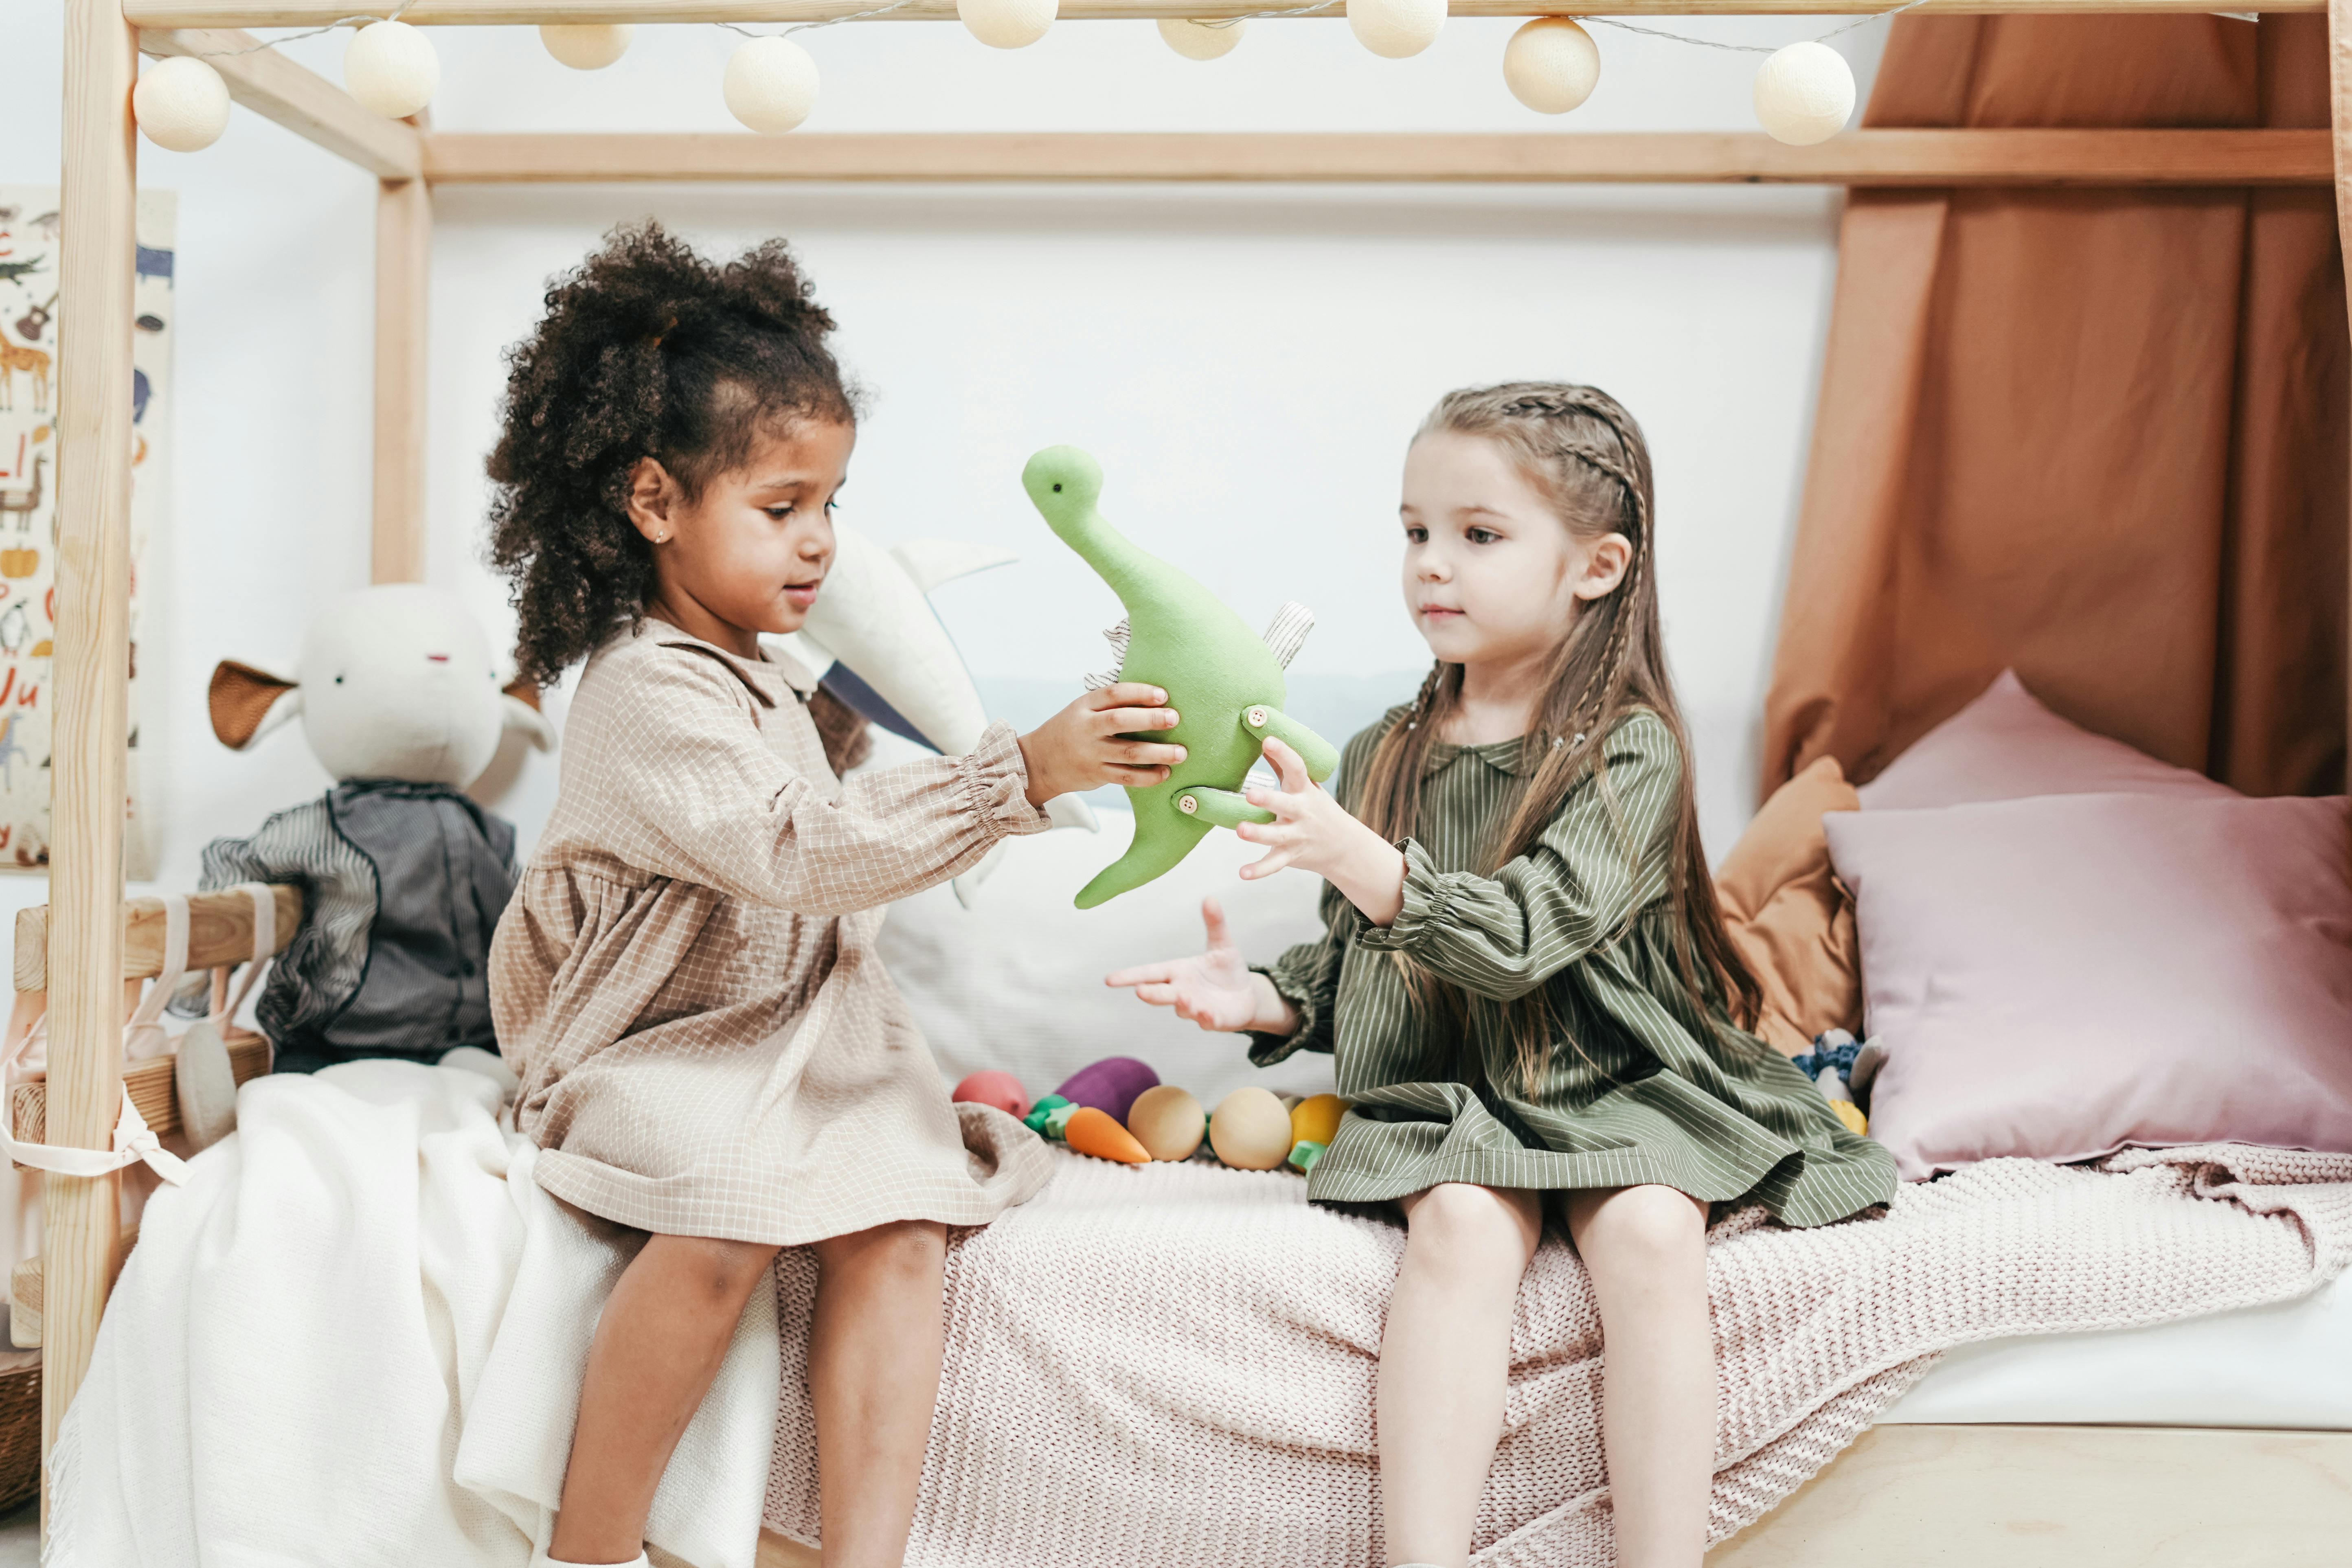 Petites filles jouant avec des jouets | Source : Pexels